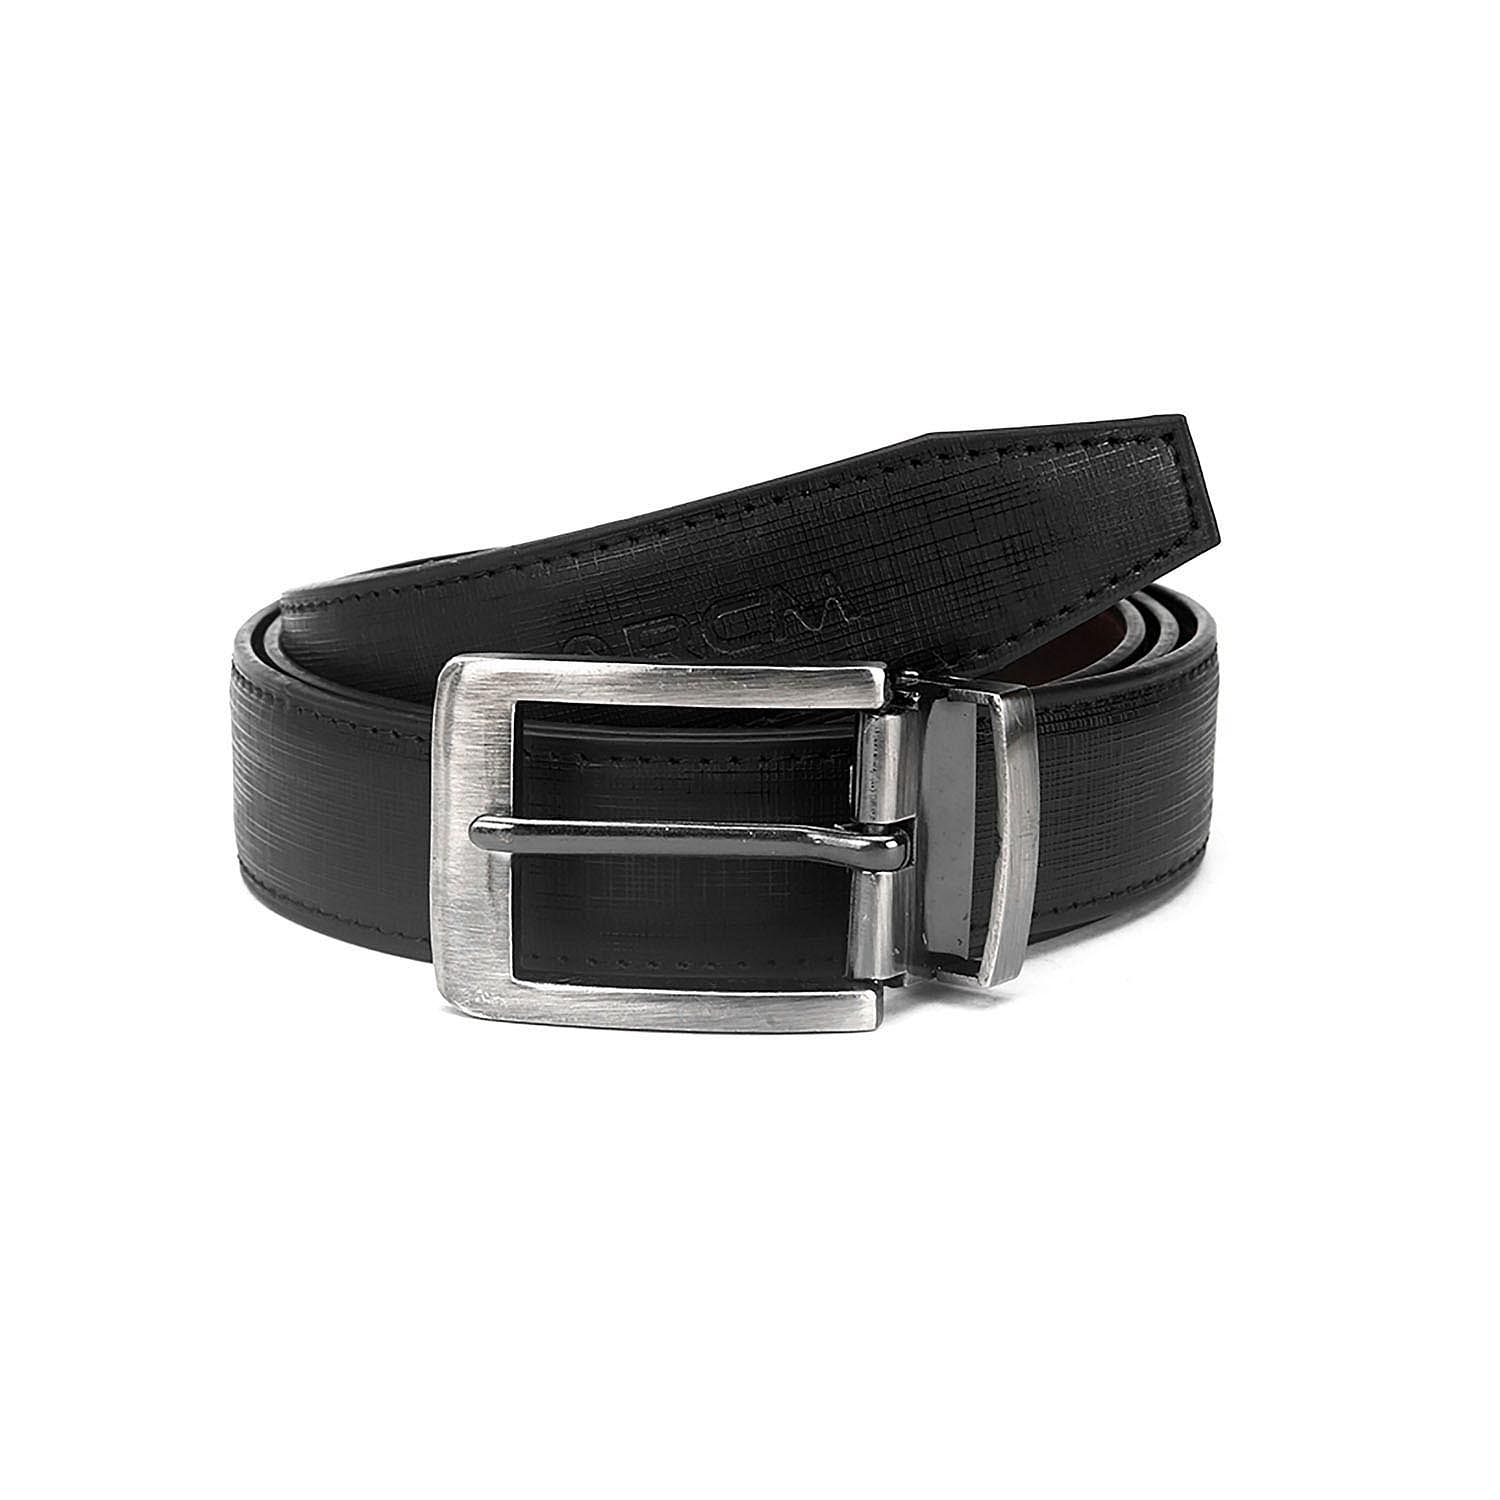 Men's Formal Belt with reversable Strap - FR-DB0008 - Black/Brown